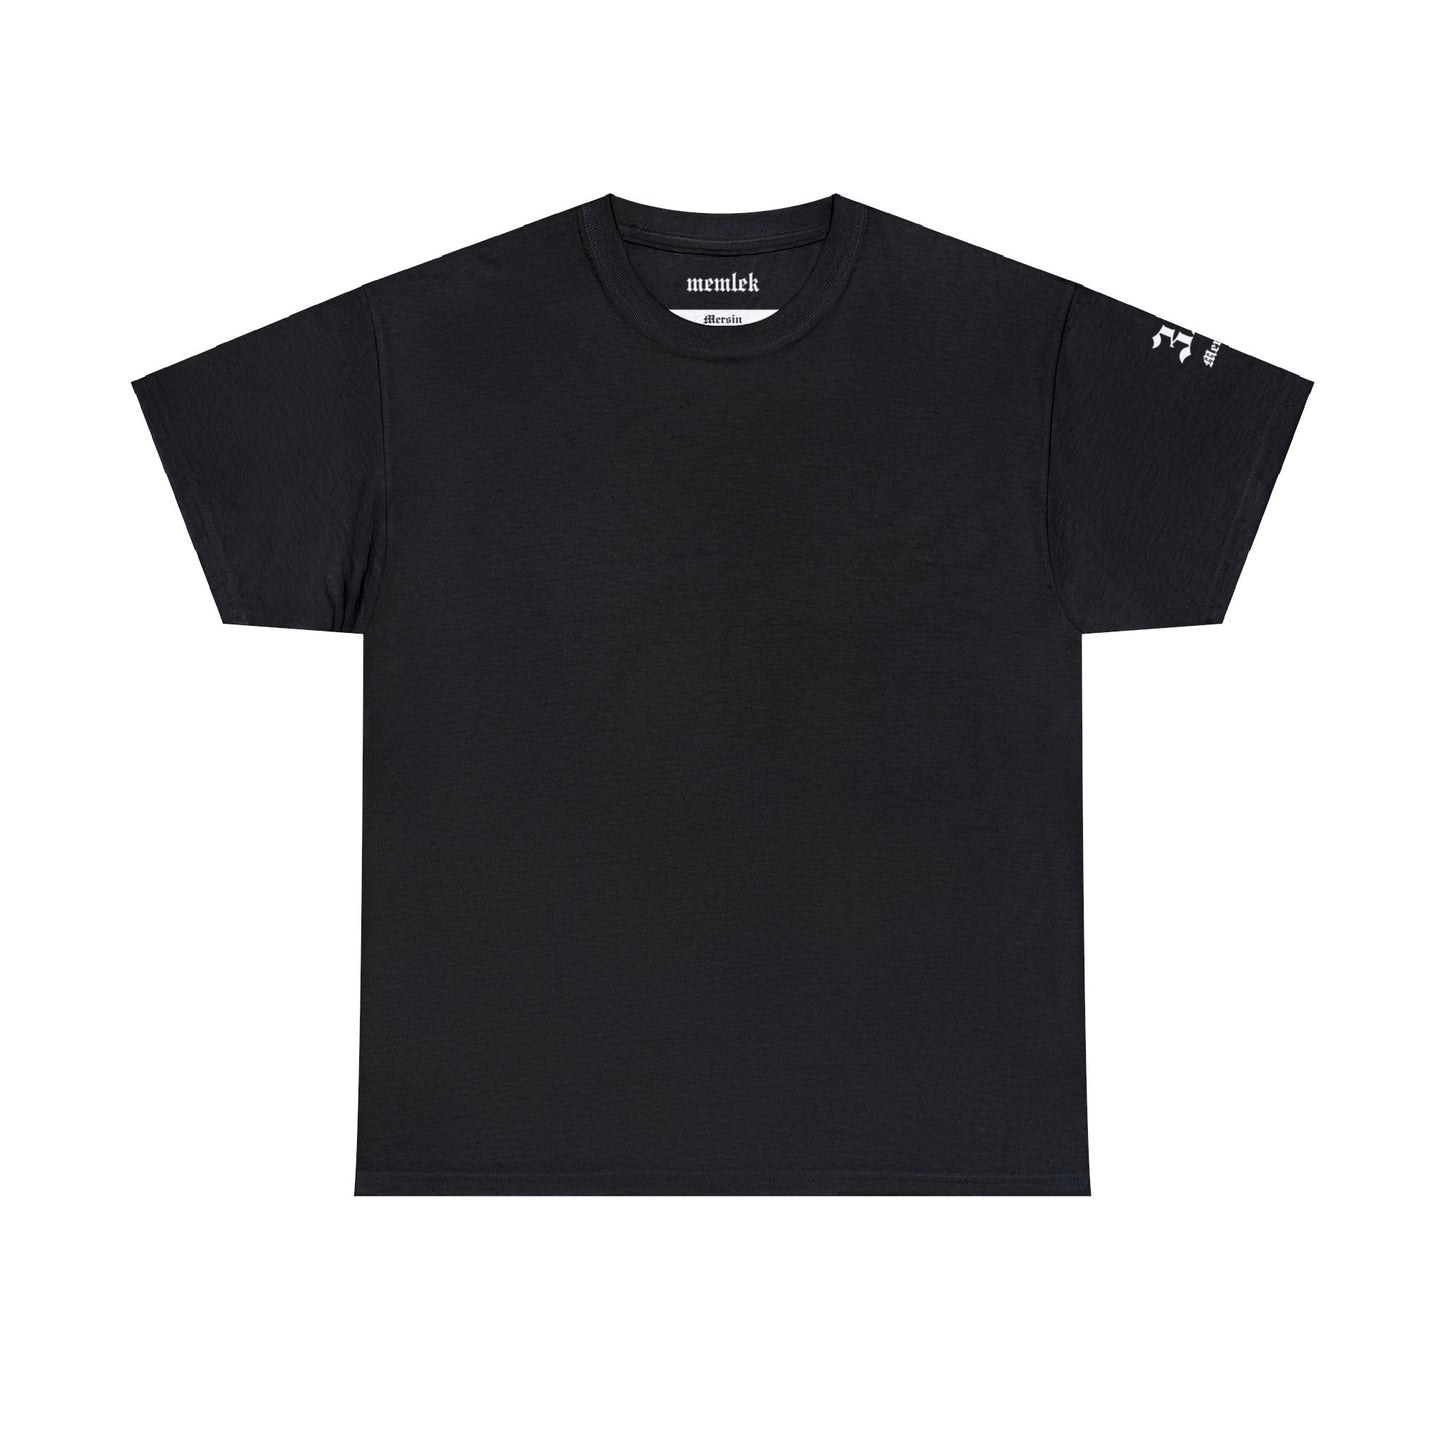 İlçem - 33 Mersin - T-Shirt - Back Print - Black